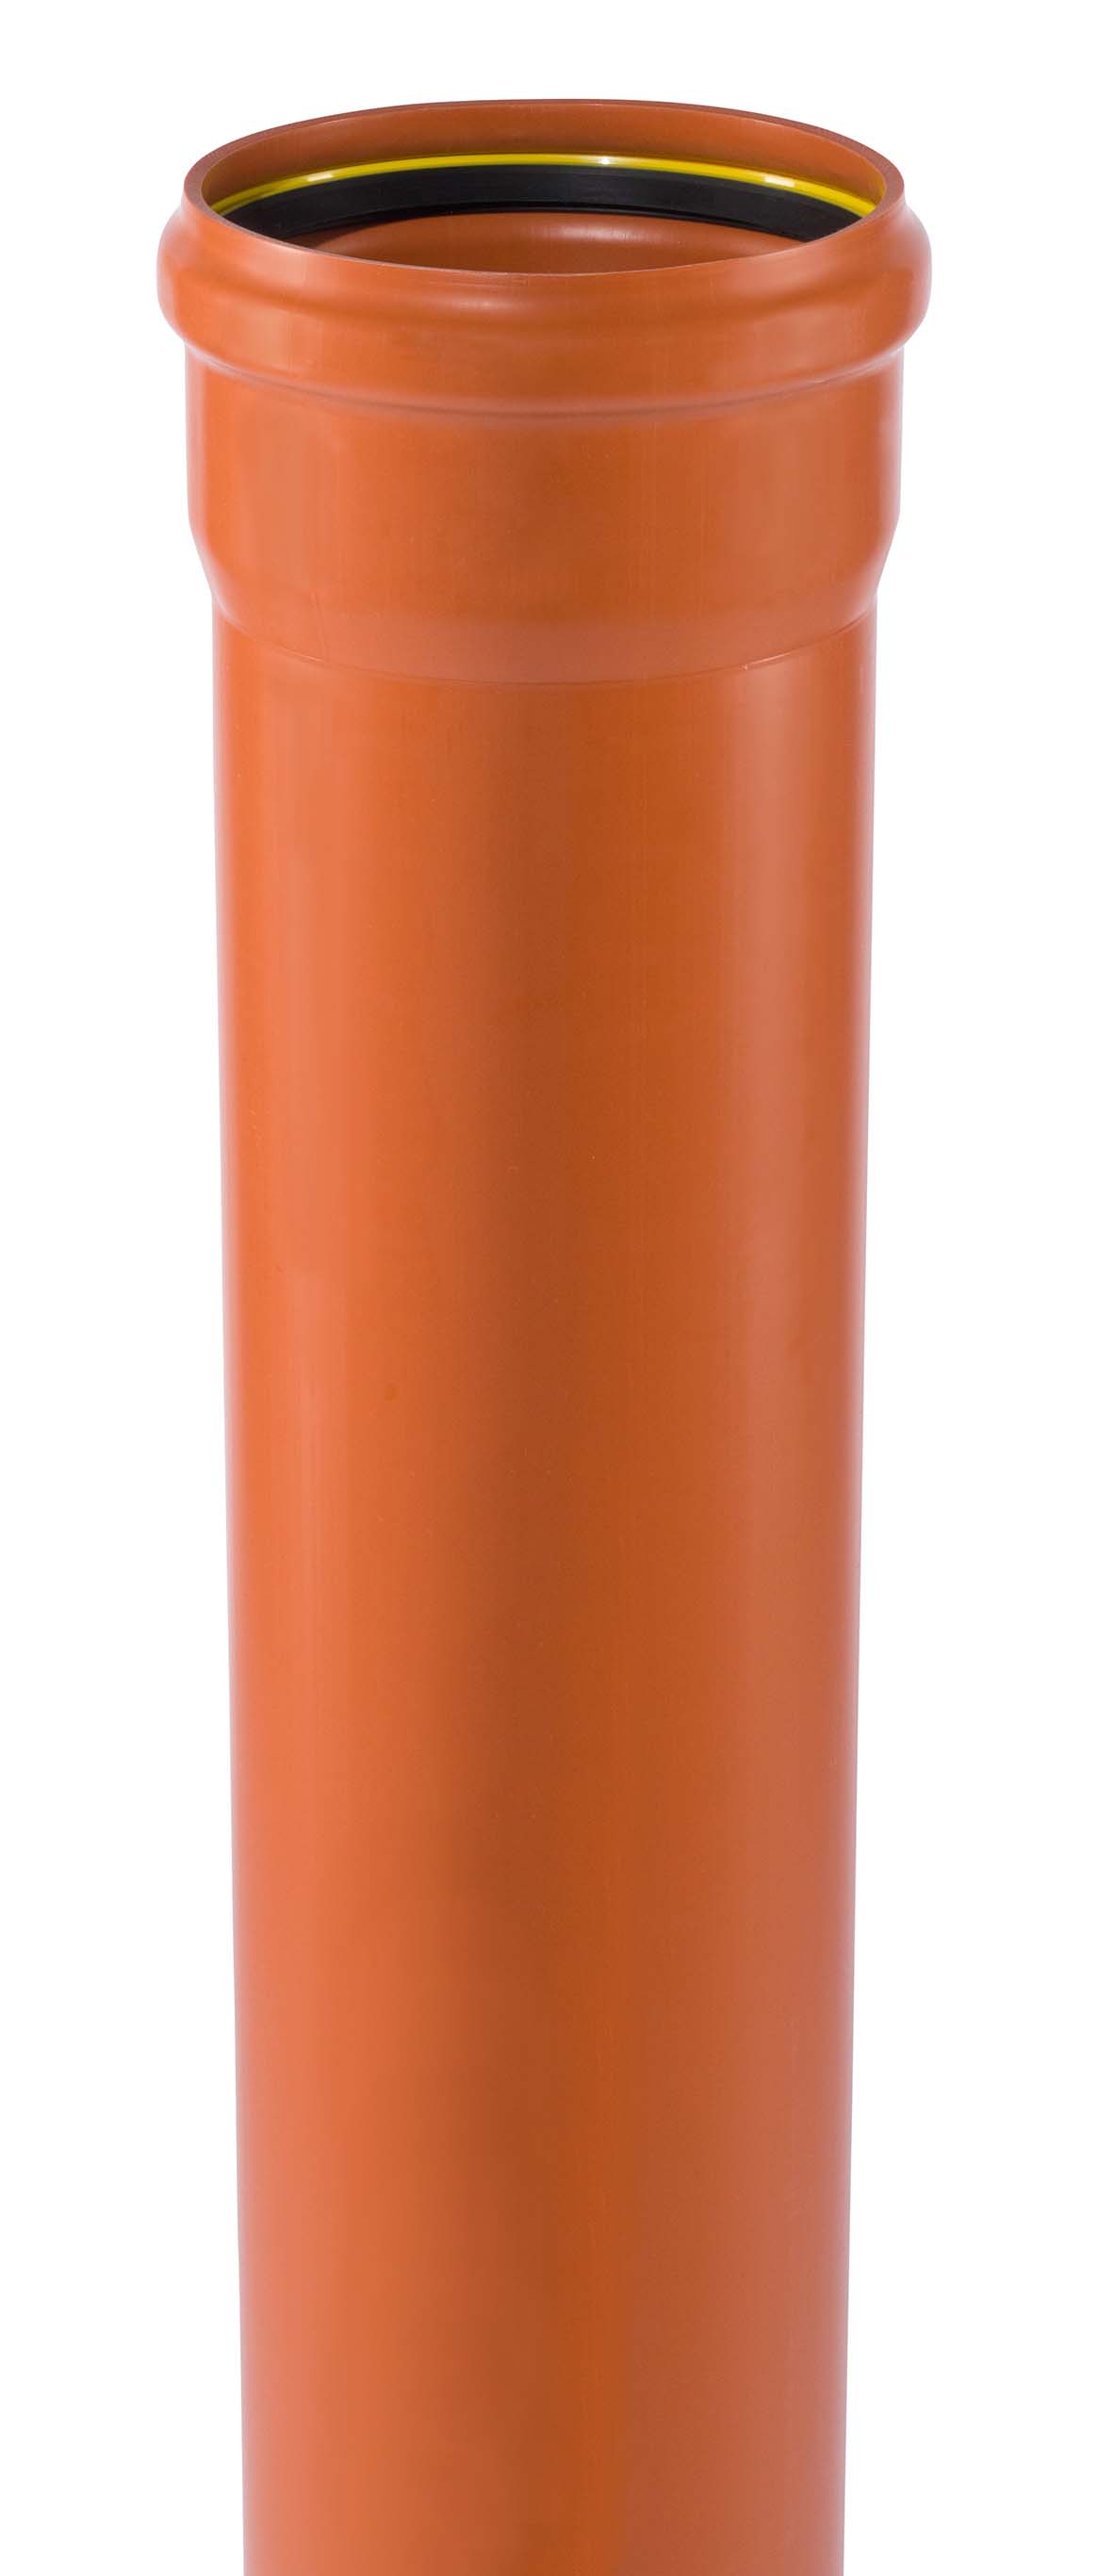 PVC-U COEX SN 8 RAL 8023 Mehrschicht DIN 13476-2 DN 160 1m